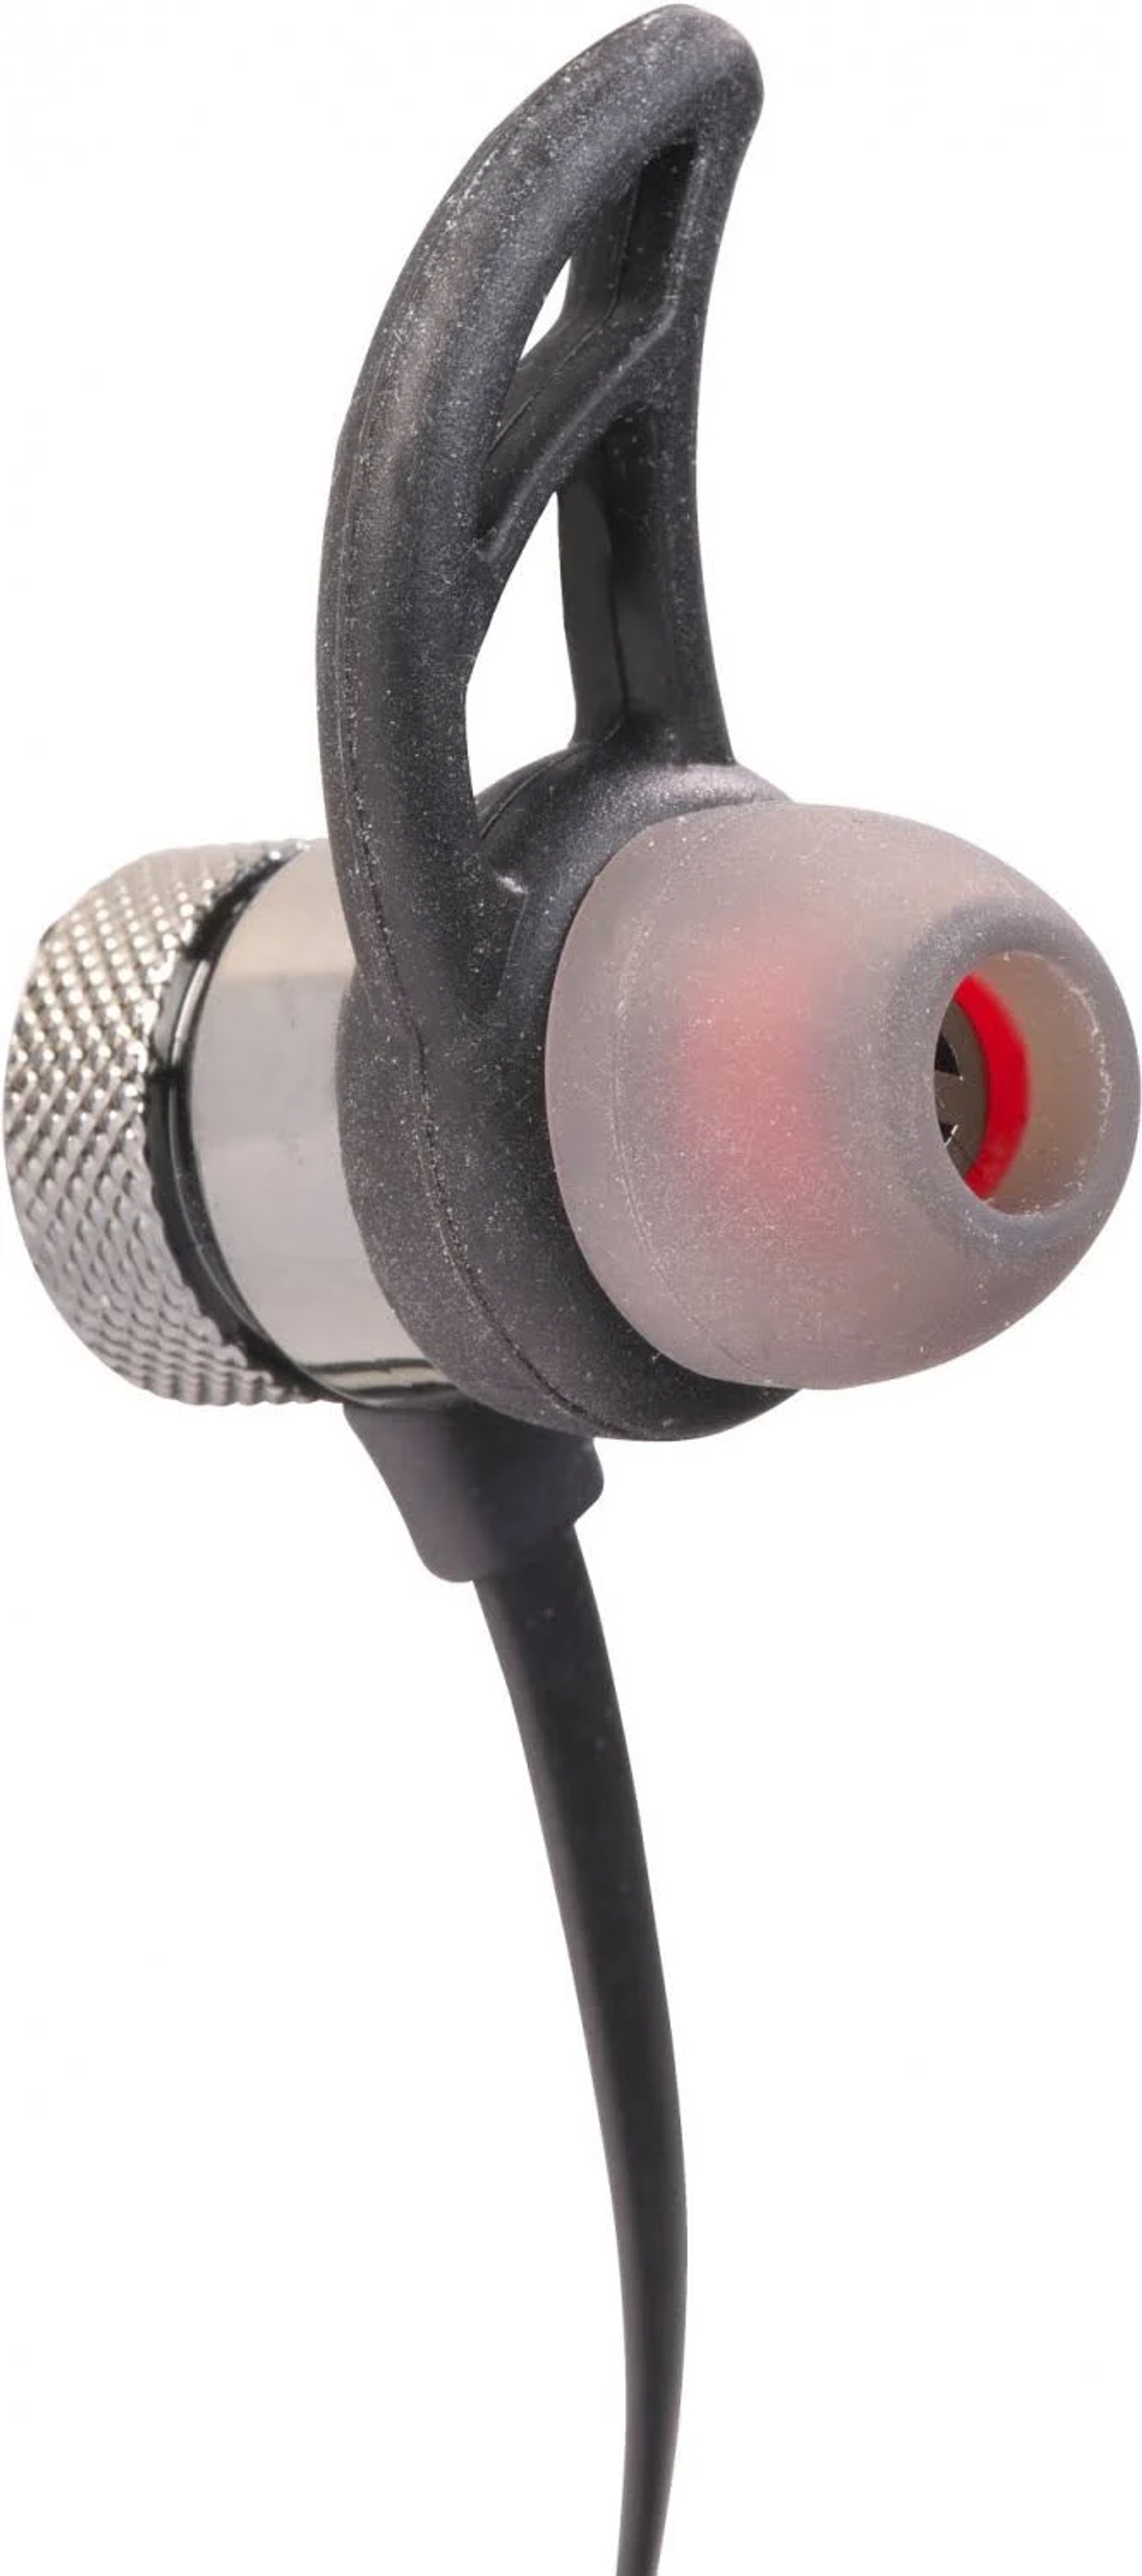 DENVER BTC-413, Over-ear Kopfhörer Bluetooth Schwarz